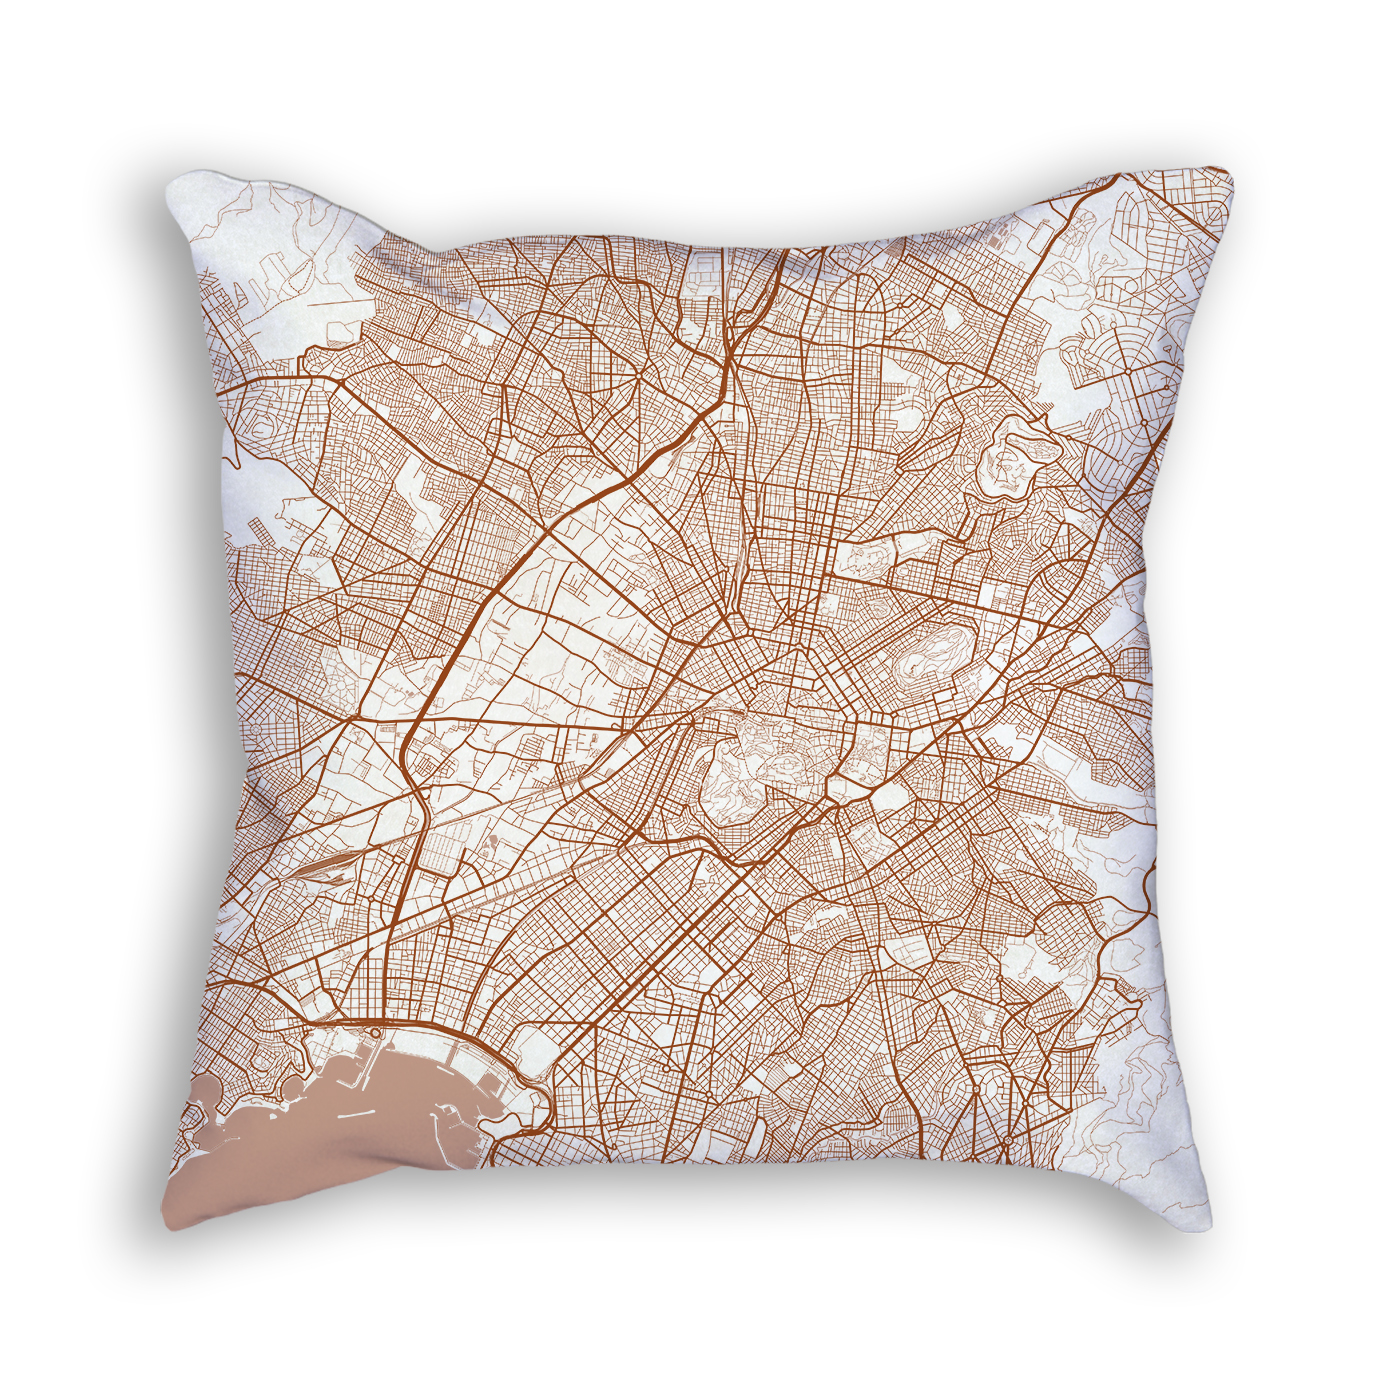 Athens Greece City Map Art Decorative Throw Pillow